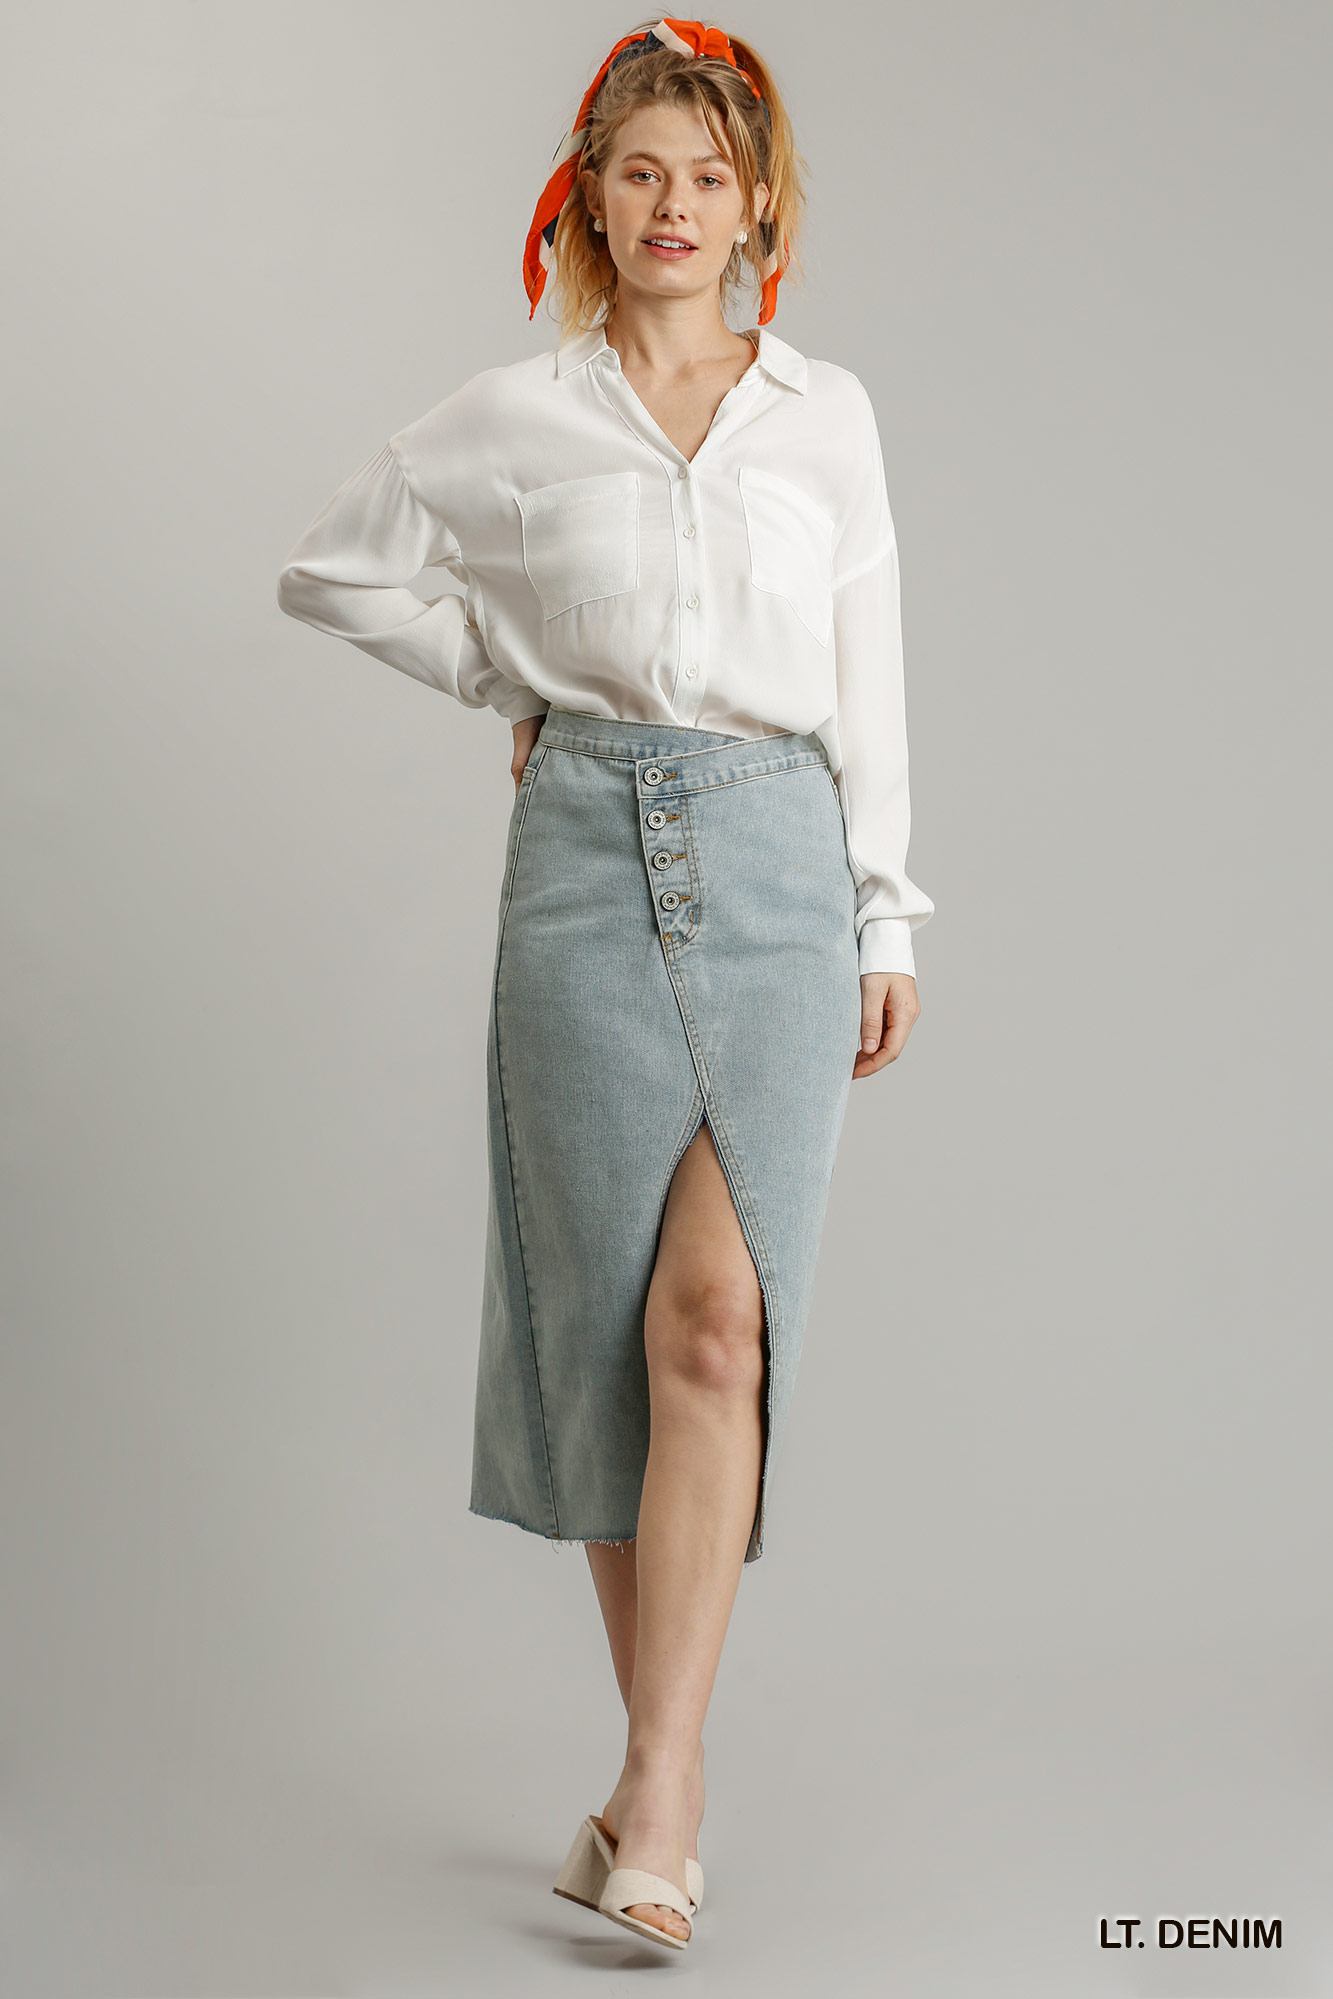 Asymmetrical Front Split Denim Skirt